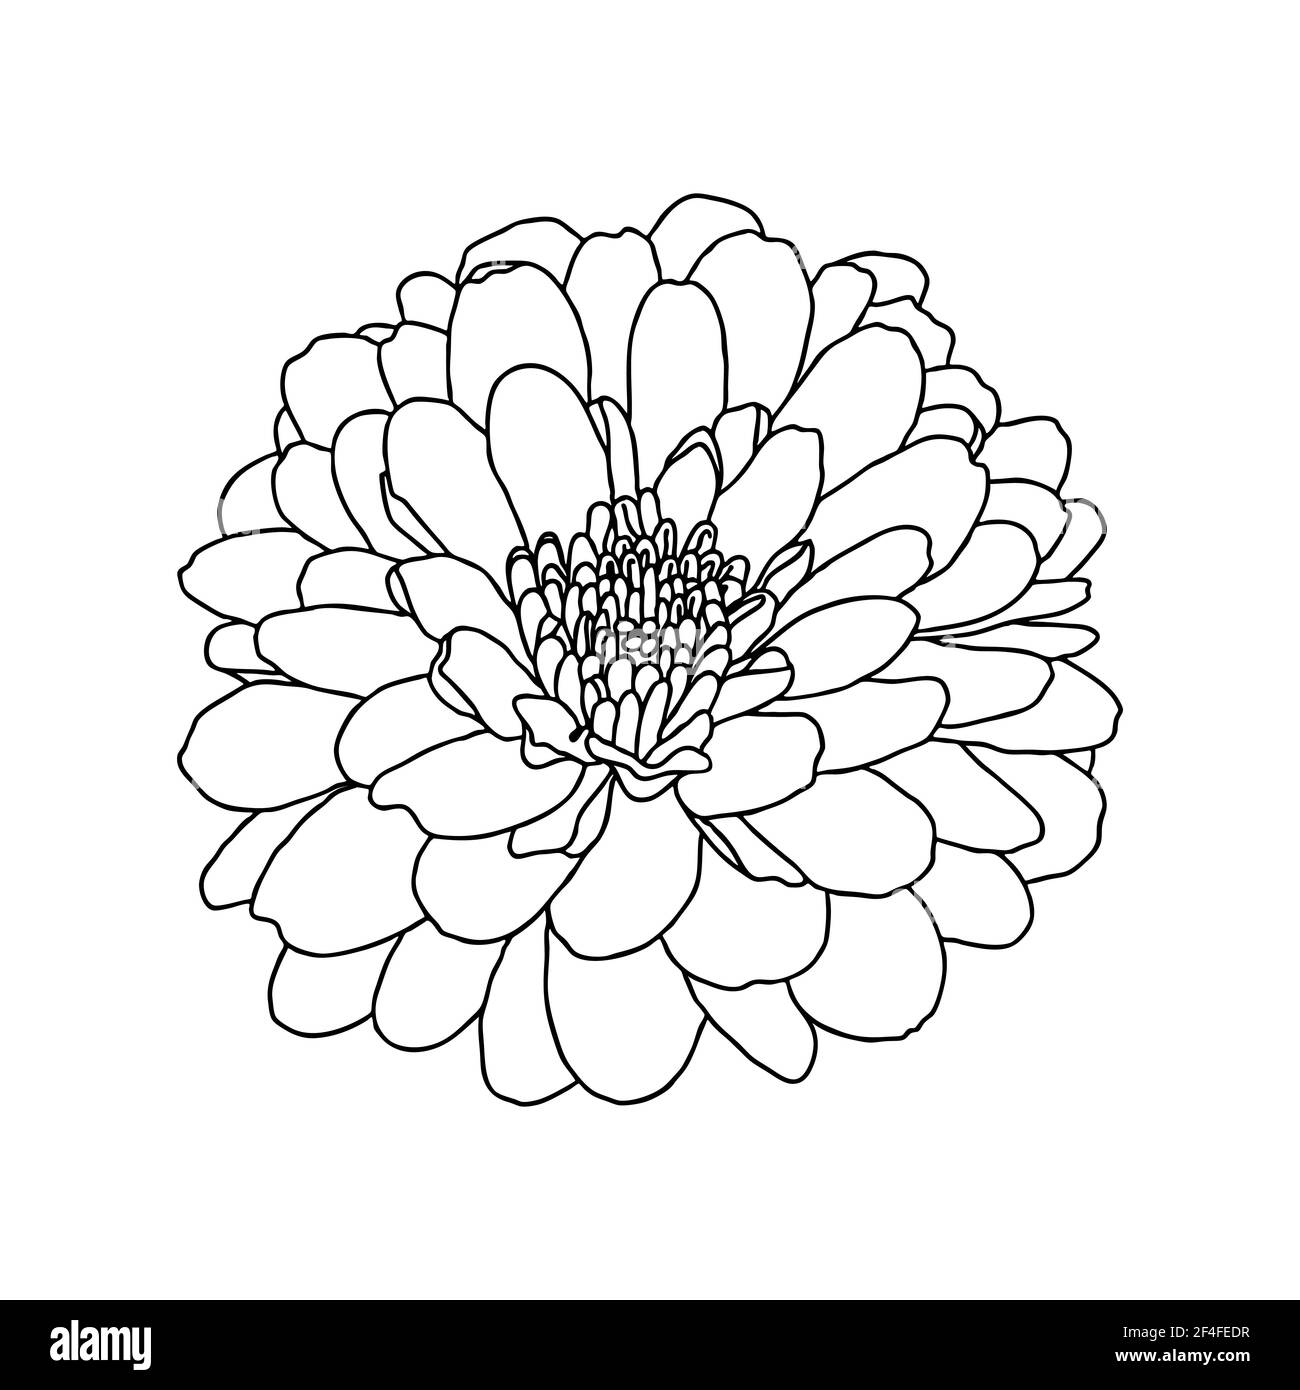 Disegno a linee di fiore di crisantemo su sfondo bianco. Schizzo disegnato a mano. Elemento decorativo per tatuaggio, biglietto d'auguri, invito al matrimonio, colore Illustrazione Vettoriale